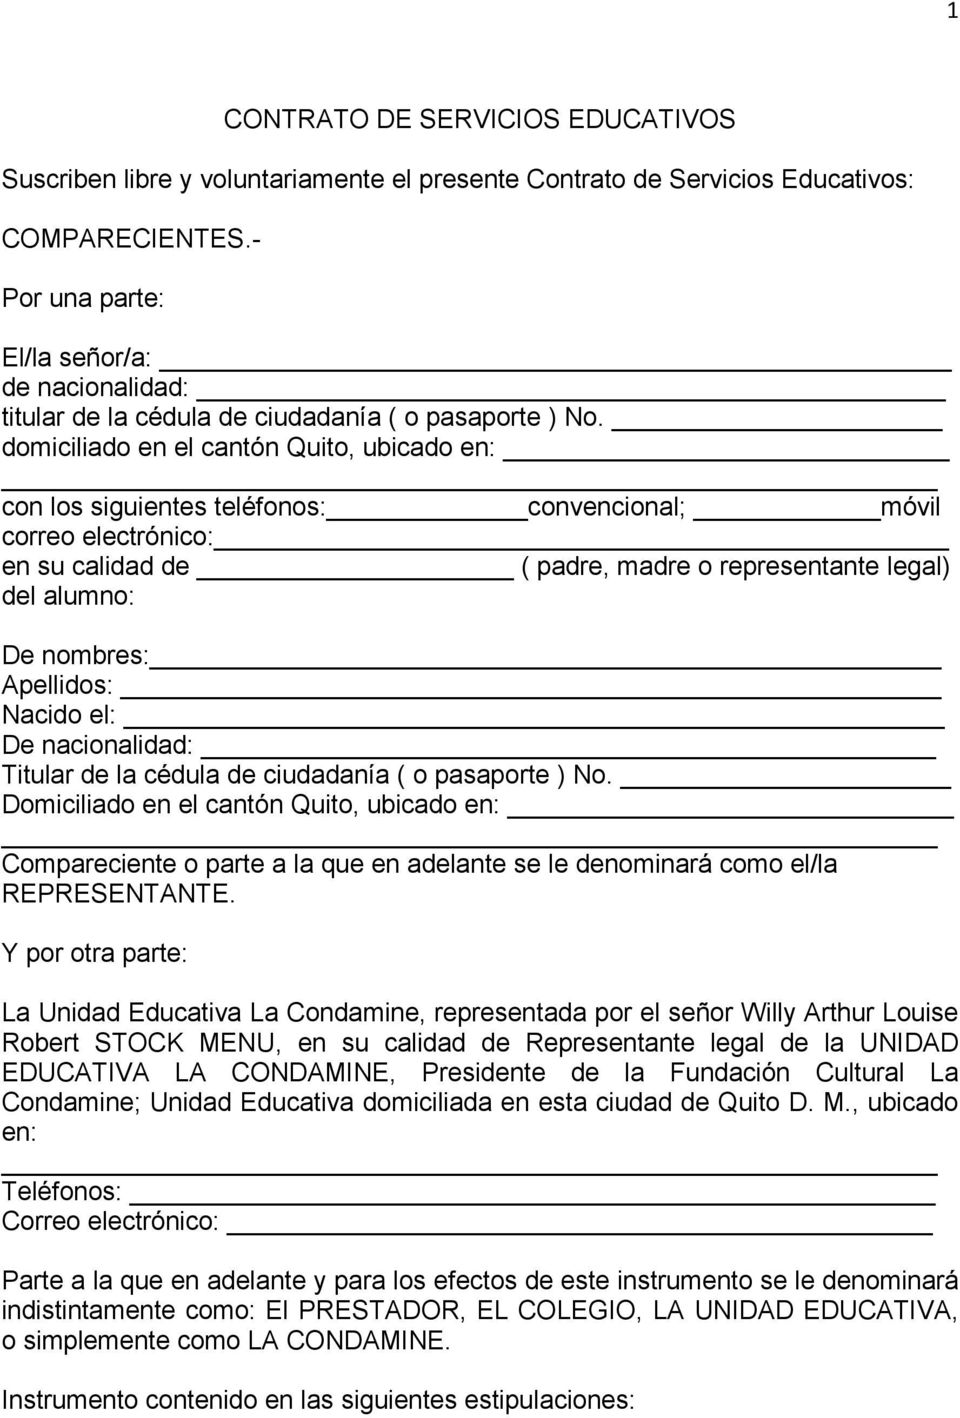 domiciliado en el cantón Quito, ubicado en: con los siguientes teléfonos: convencional; móvil correo electrónico: en su calidad de ( padre, madre o representante legal) del alumno: De nombres: